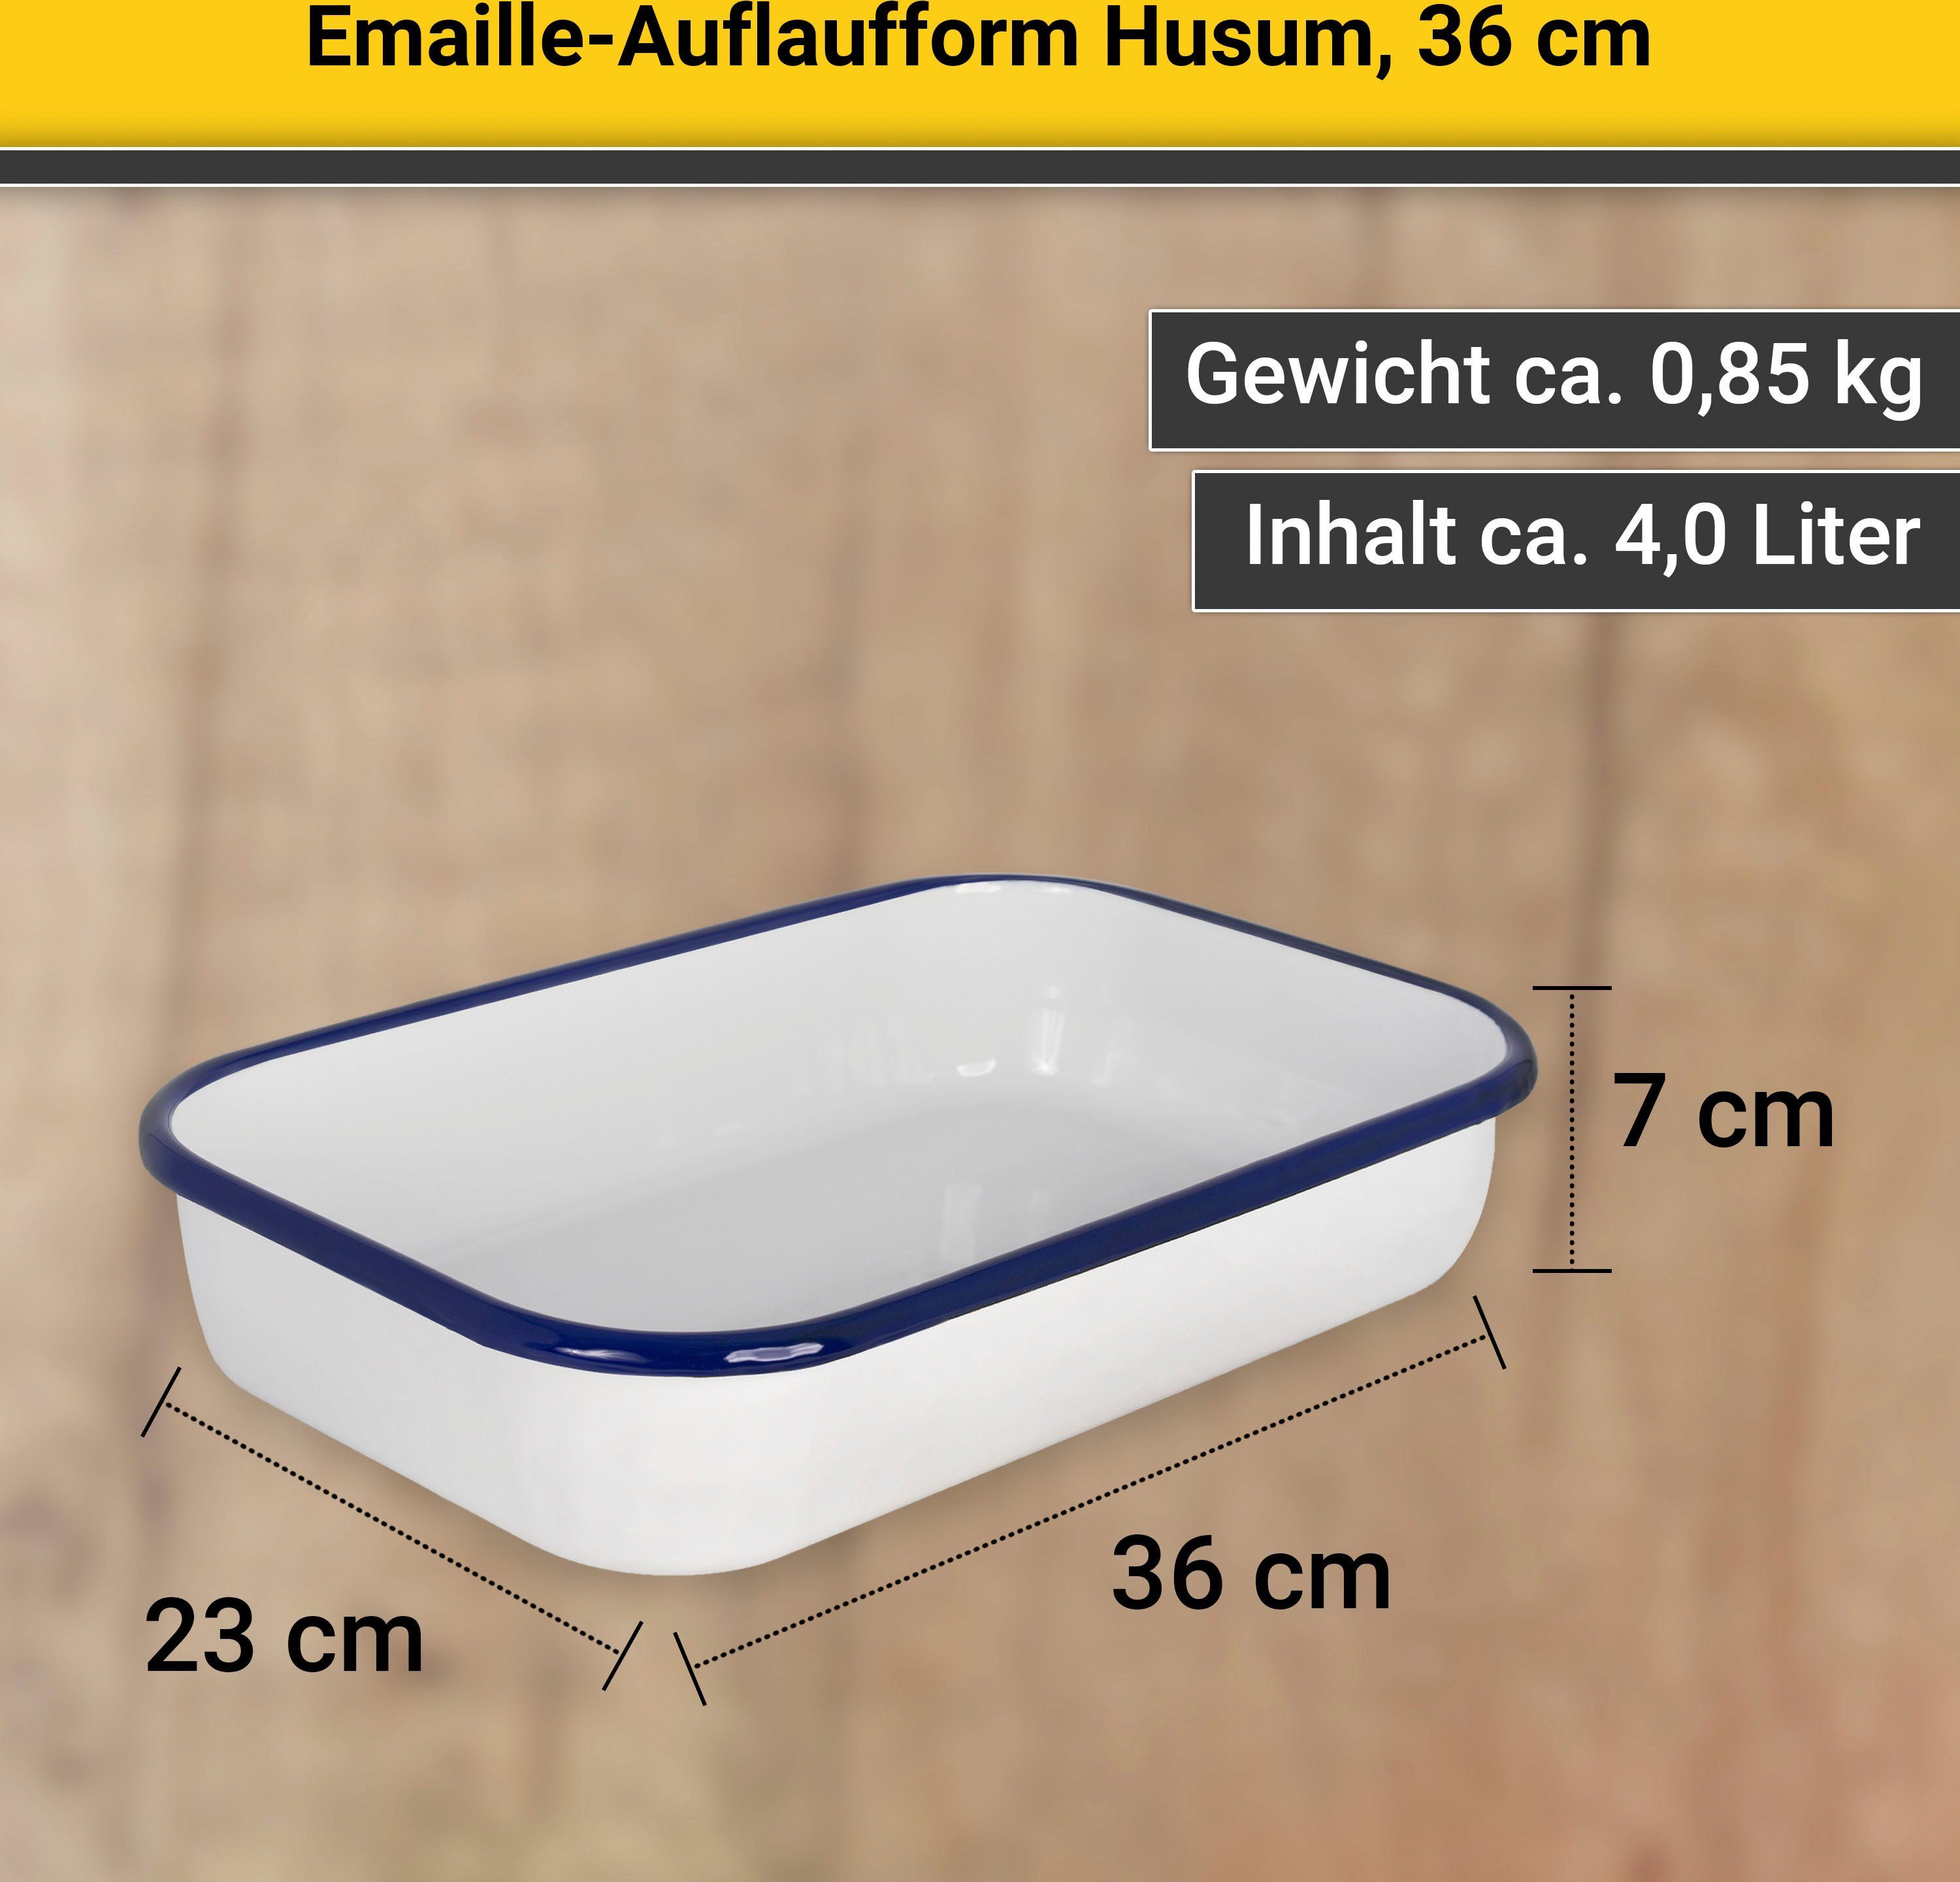 Krüger Auflaufform 36 Husum, Emaille, cm